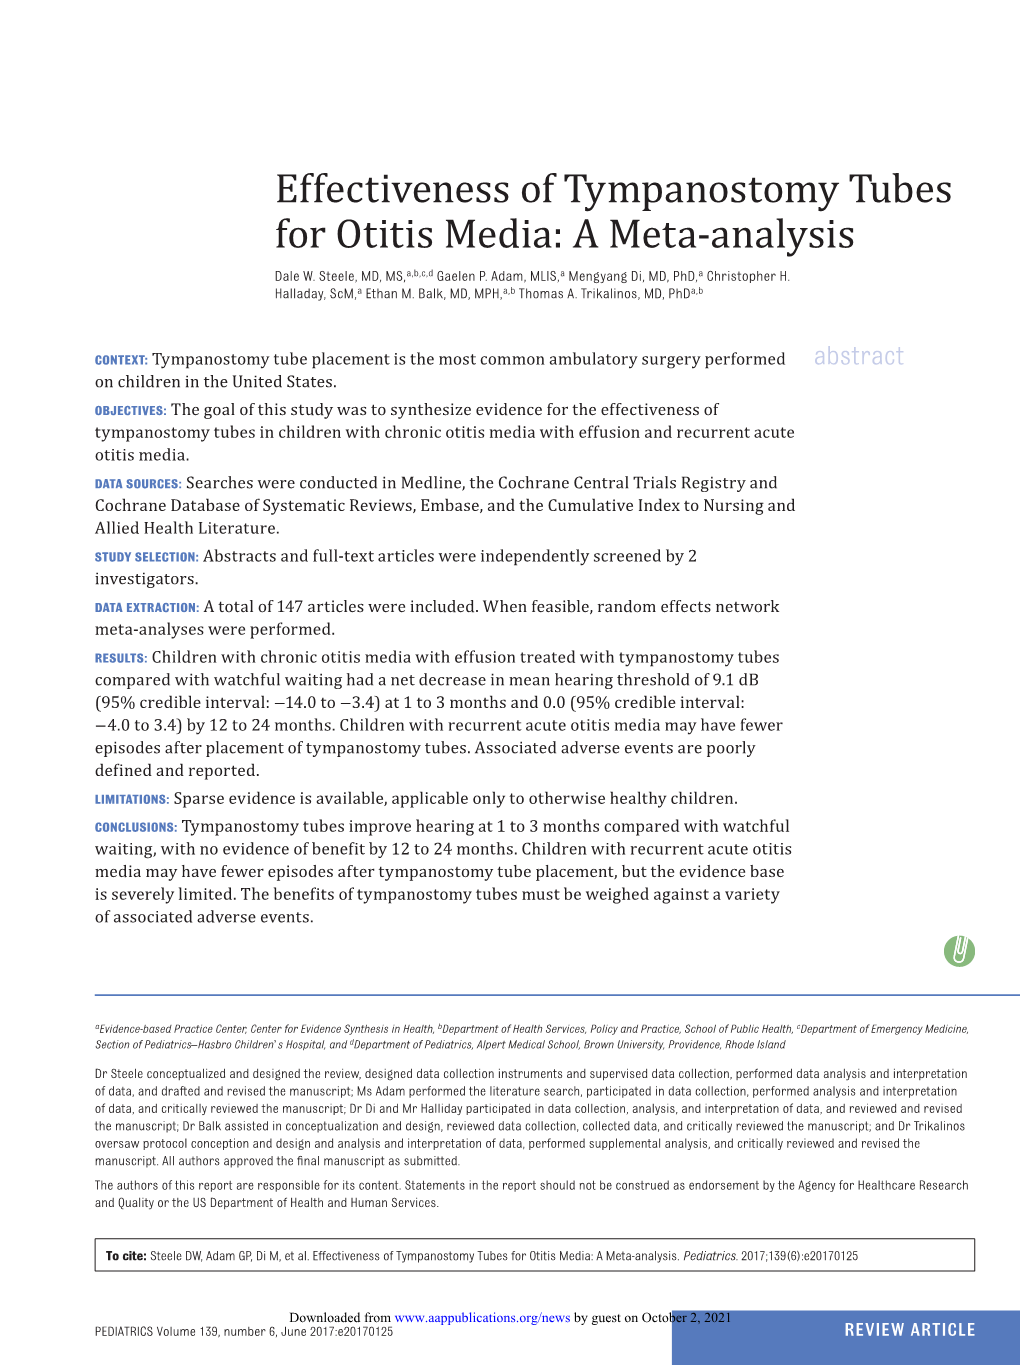 Effectiveness of Tympanostomy Tubes for Otitis Media: a Meta-Analysis